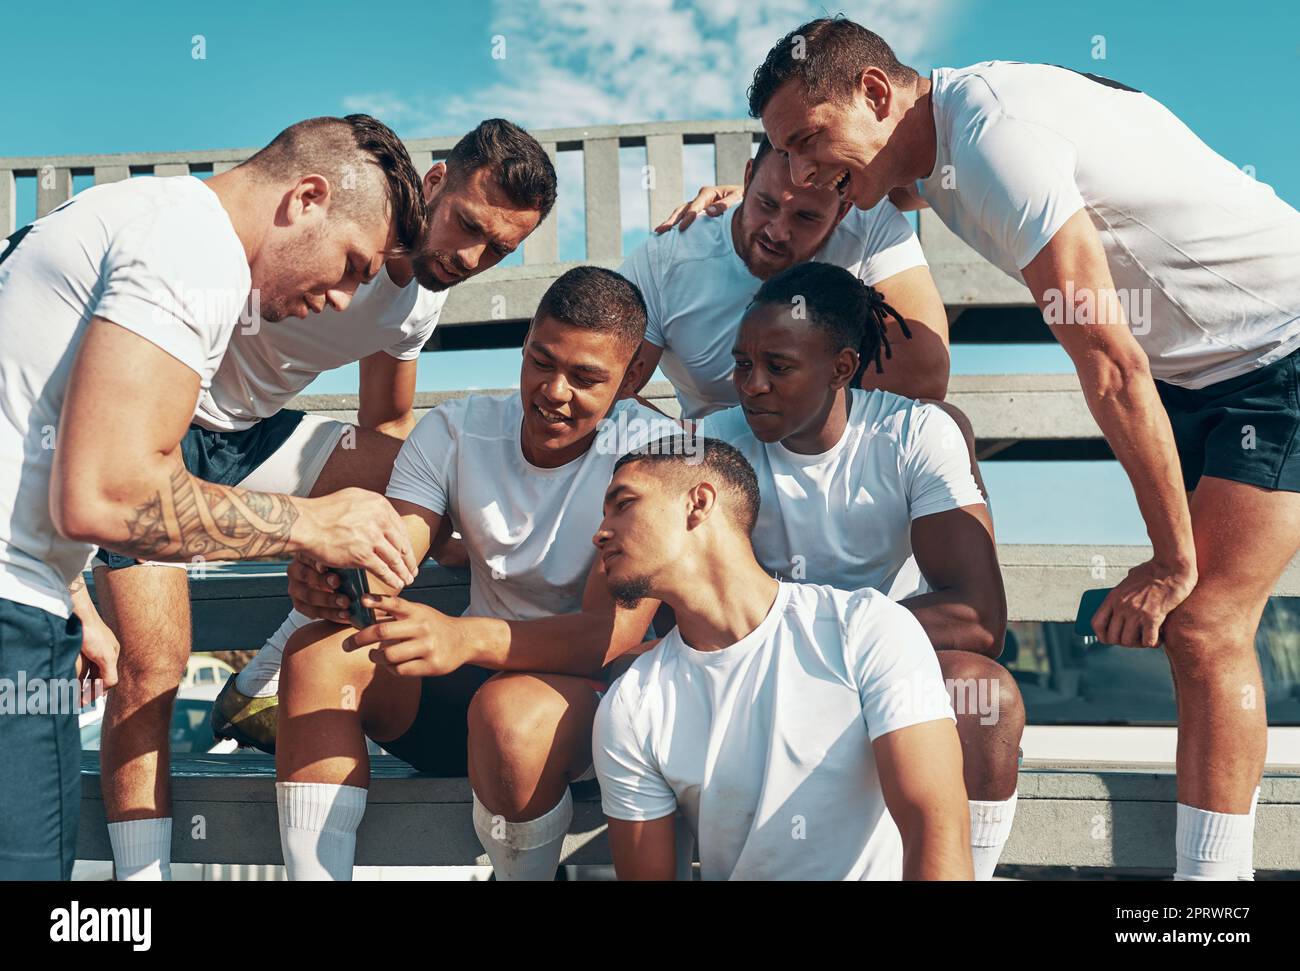 Schauen Sie sich all unsere Unterstützer an, die uns gute Wünsche senden. Ein Rugby-Spieler zeigt seinen Teamkollegen etwas auf seinem Handy. Stockfoto